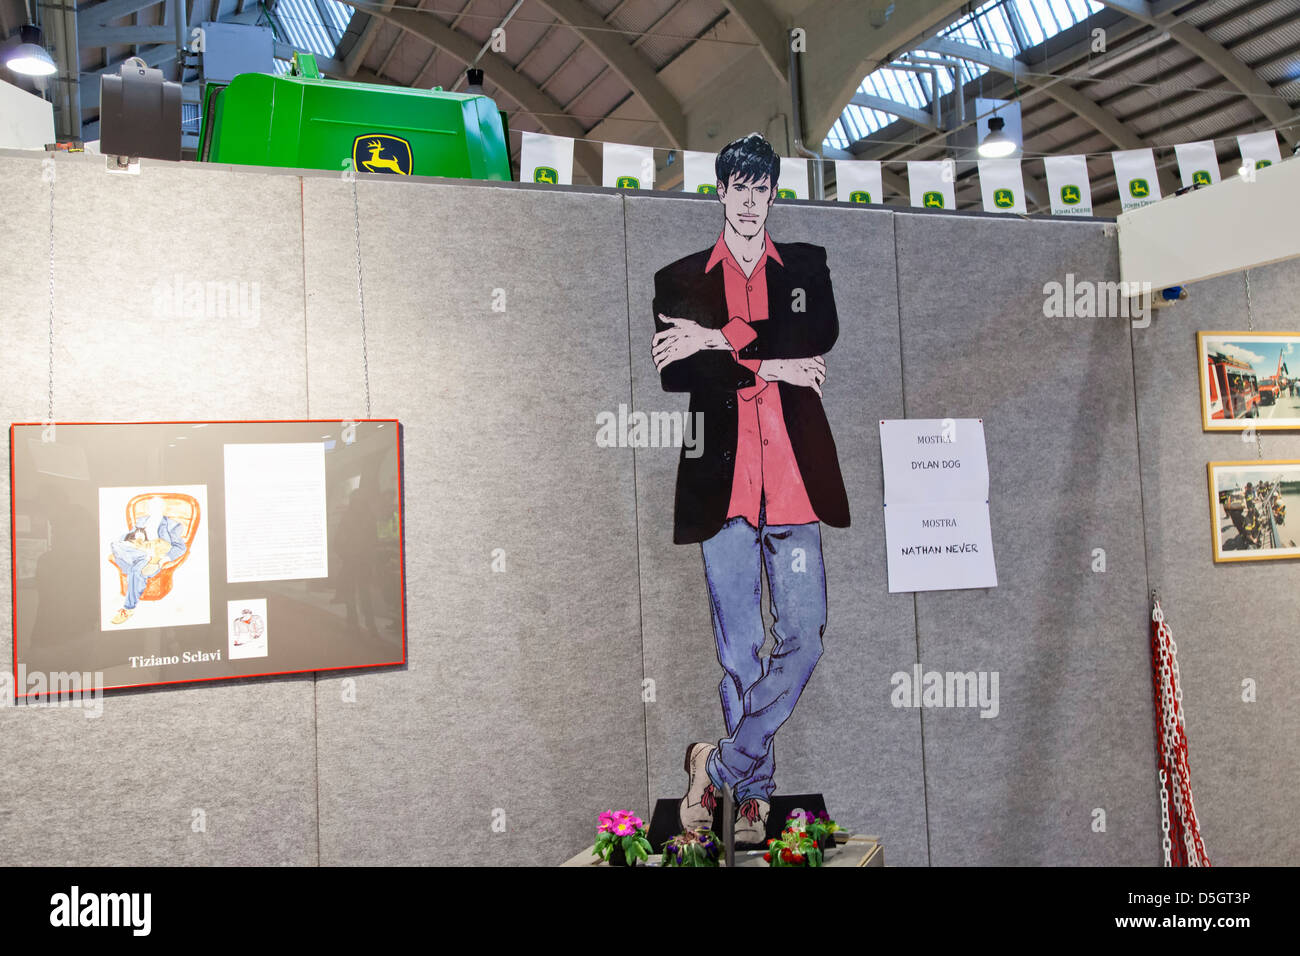 Großes Bild von italienischen Comics Charakter Dylan Dog auf Messe Stockfoto